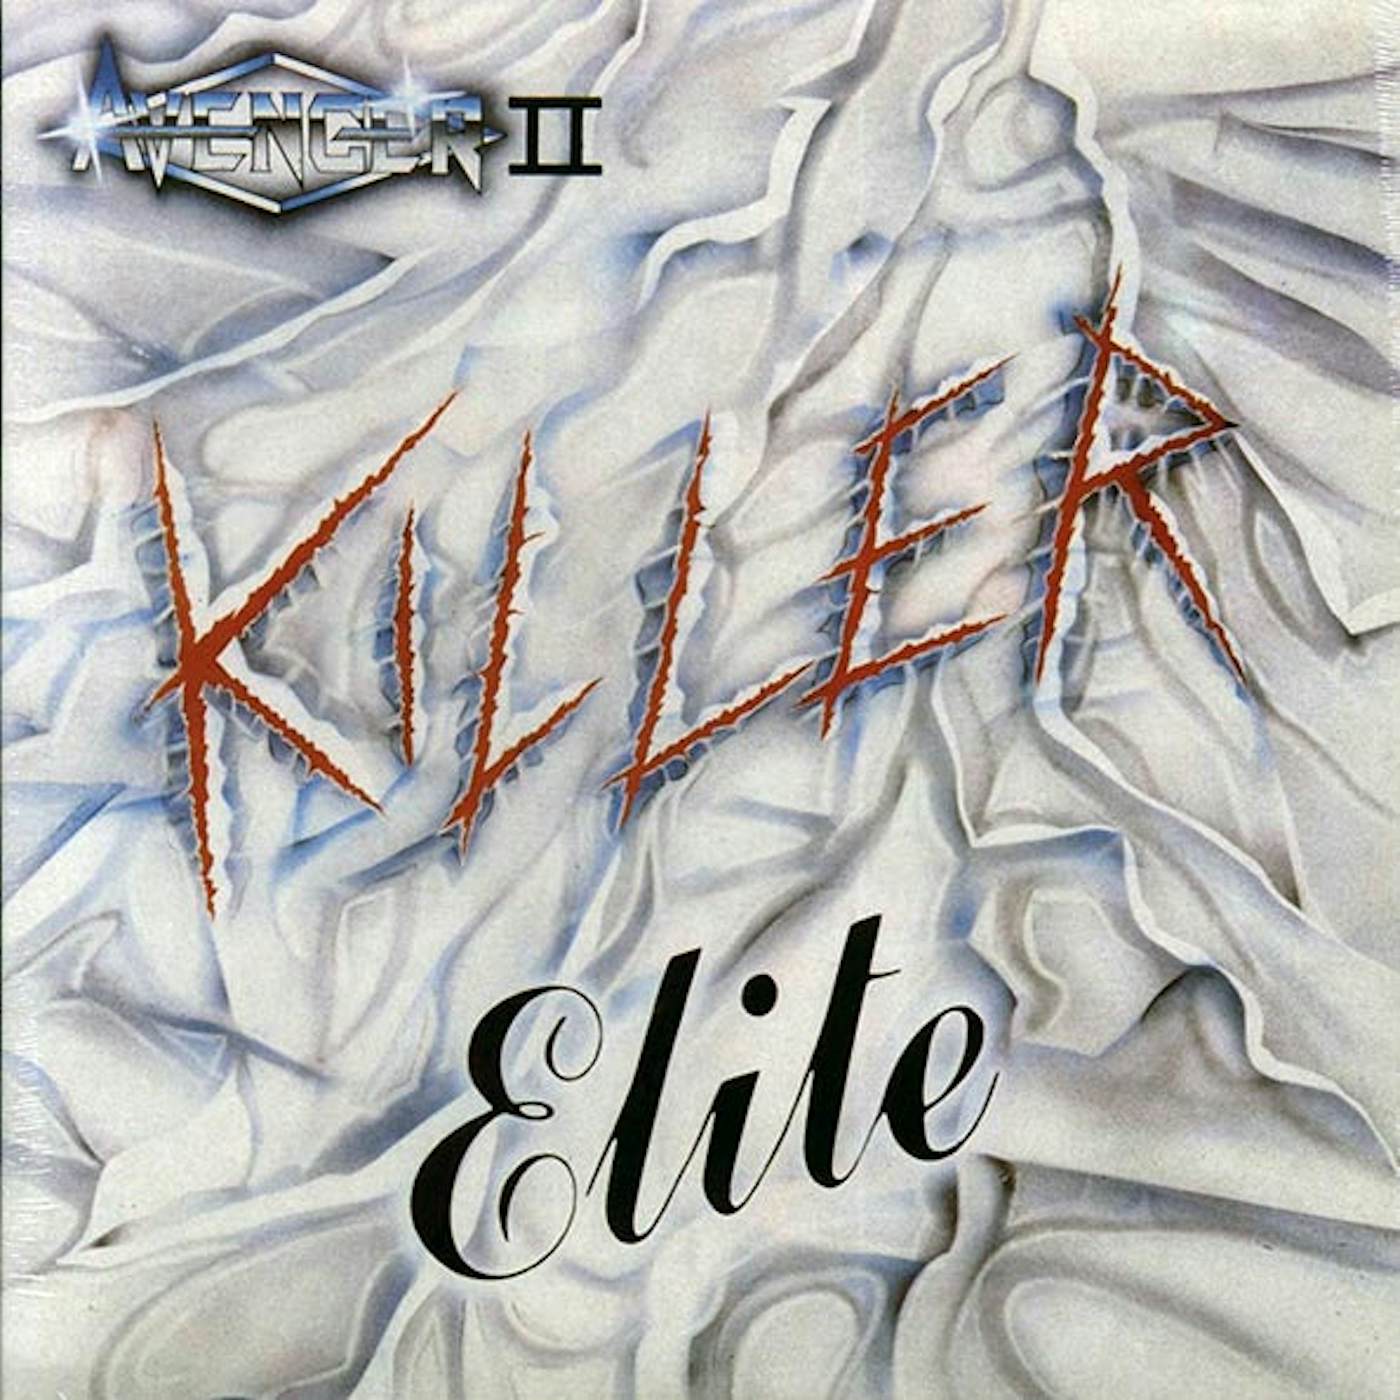 Avenger  LP -  Killer Elite (blue vinyl)